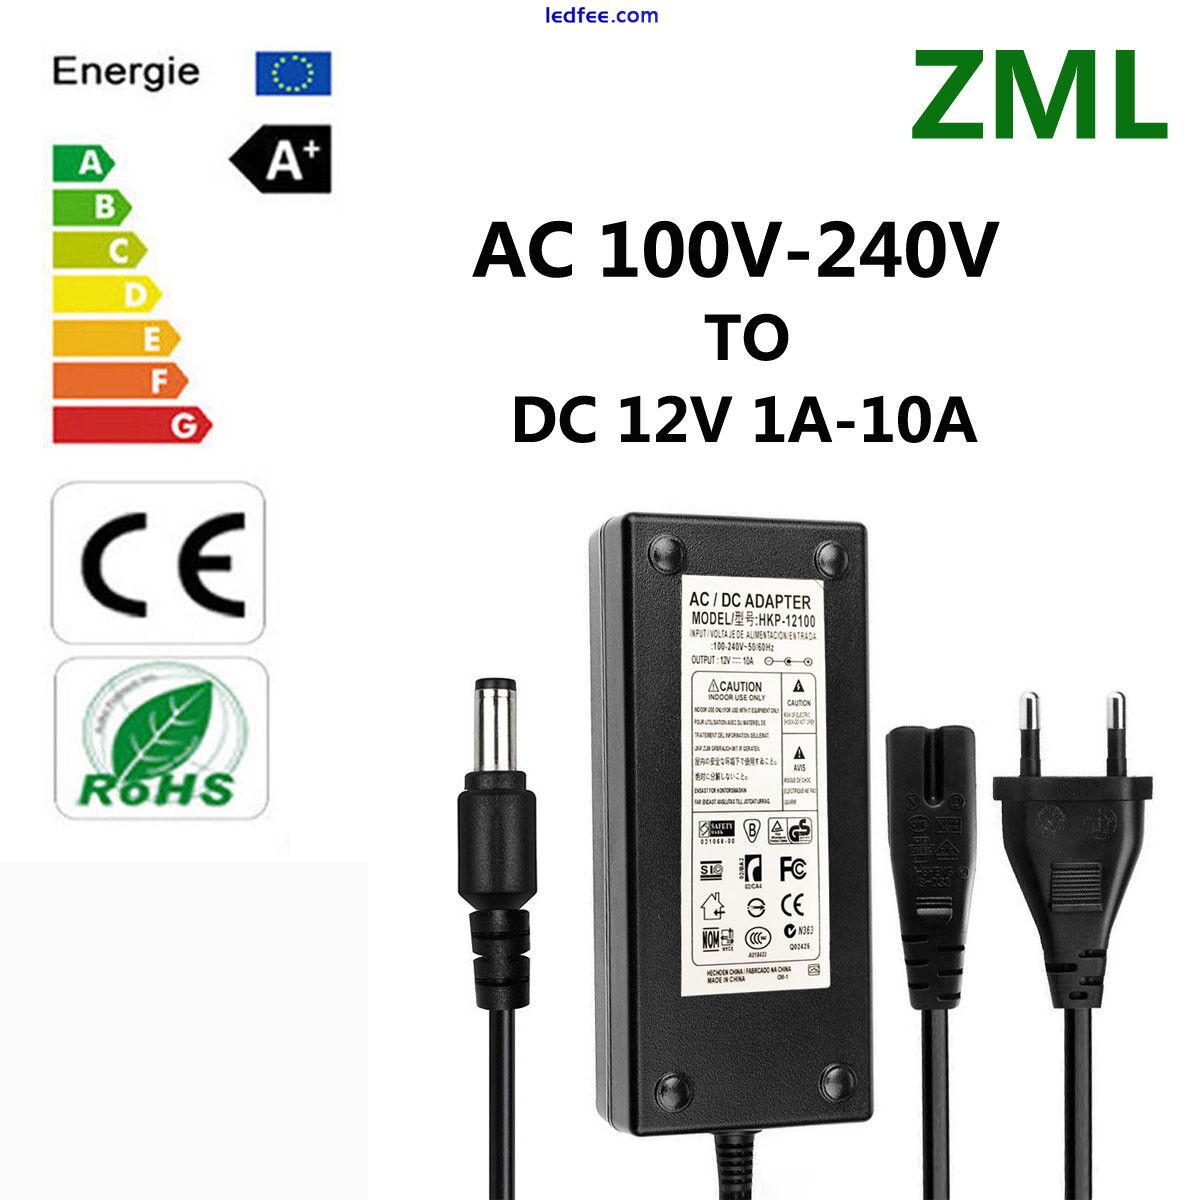 LED Power Supply Adapter AC 100V-240V To DC 12V 1A-10A For LED Strip EU Plug 0 